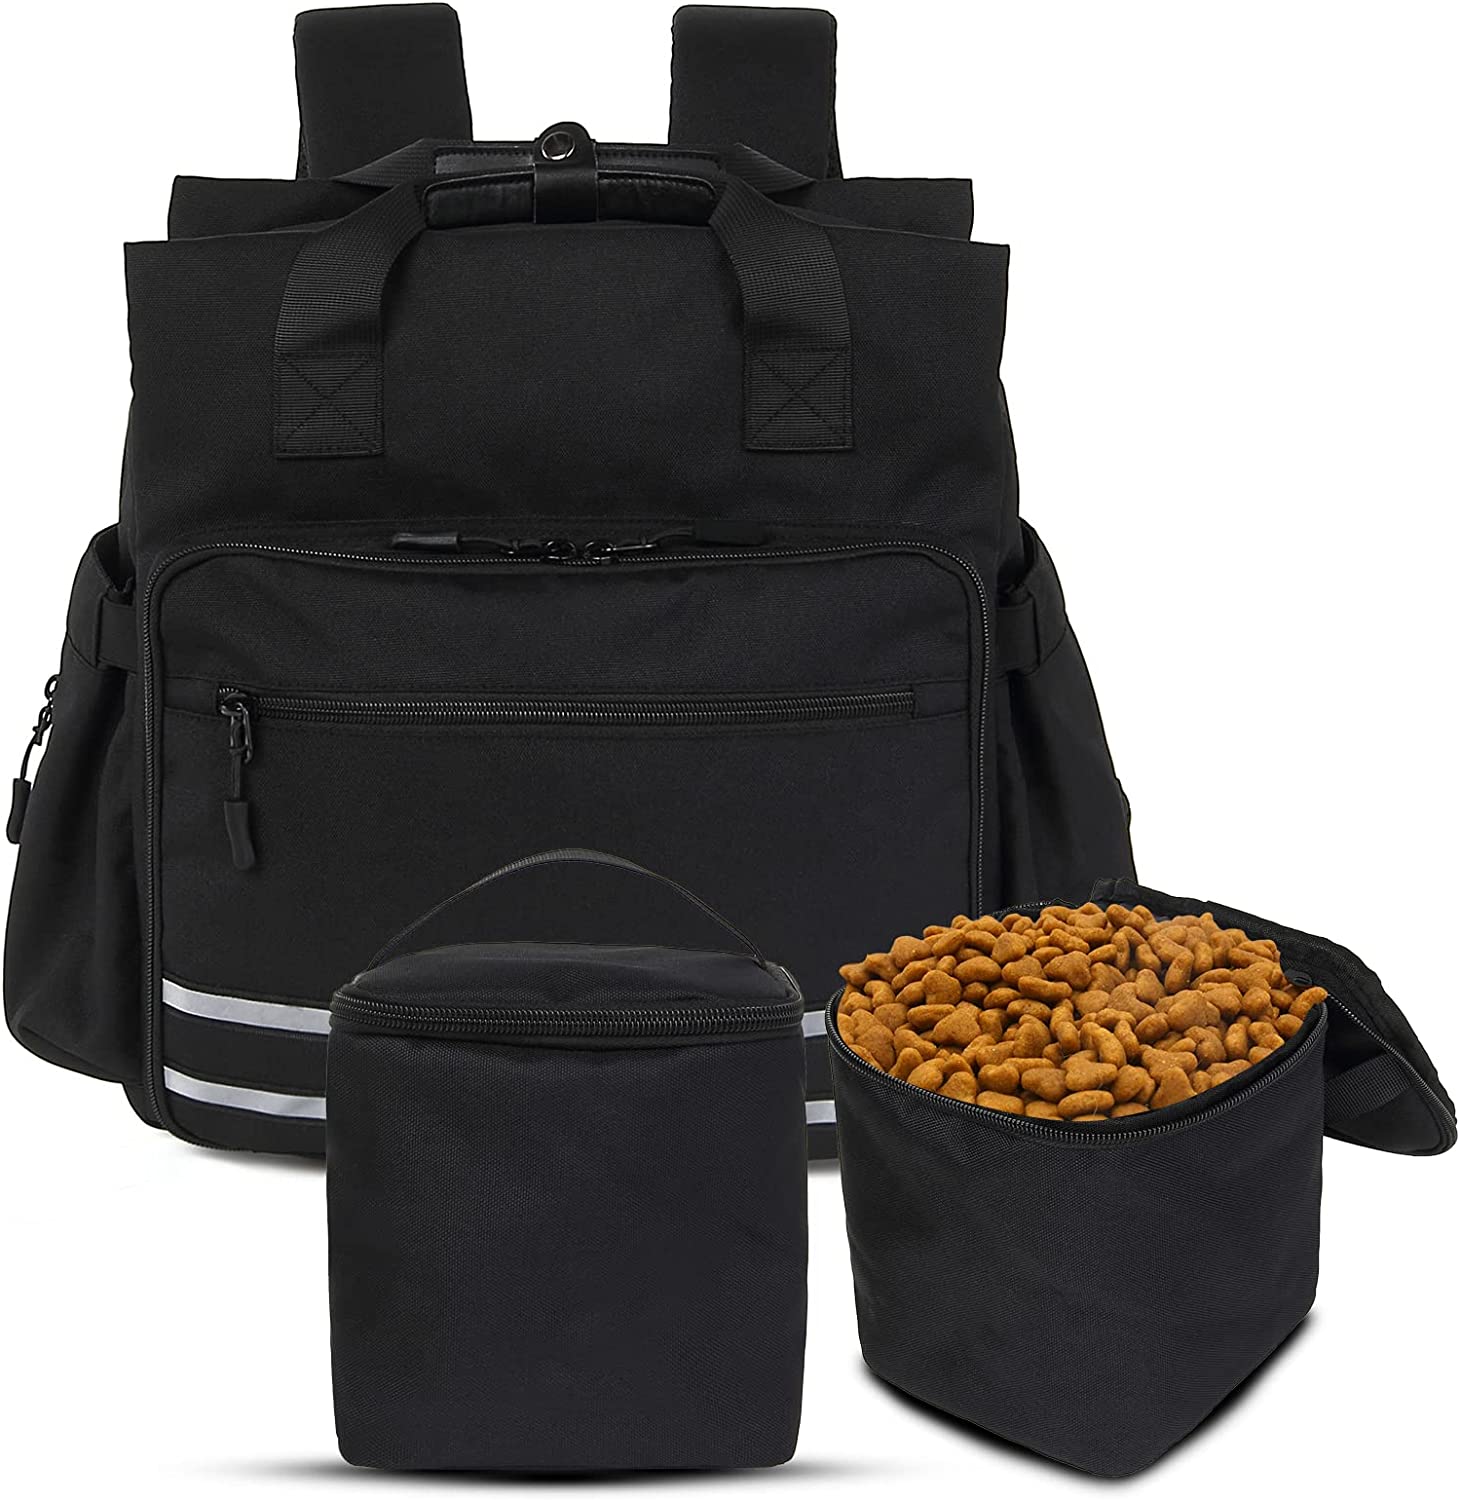 Haustier-Reiserucksack-Set mit 2 Lebensmittel-Aufbewahrungsbehältern, Hunde-Reiserucksack, Heimtierbedarf, Tragetasche